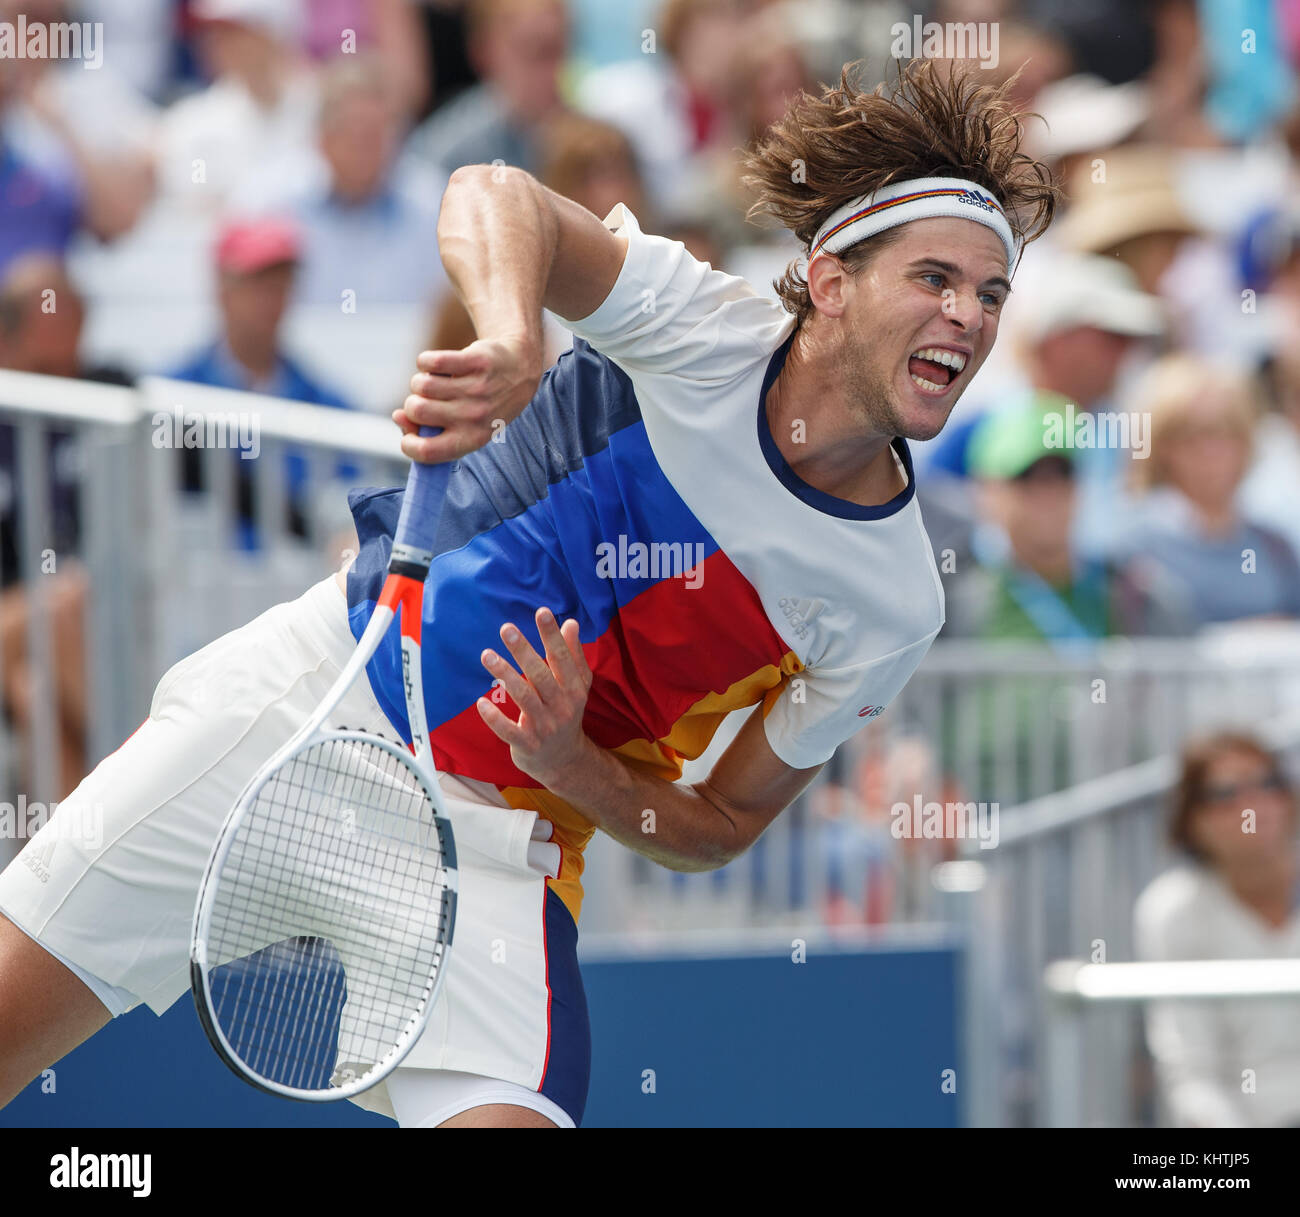 Austrian tennis player Dominic thiem (Aut) während singles Männer gleichen bei uns Open Tennis Championship 2017, New York City, New York State, Einheit Stockfoto